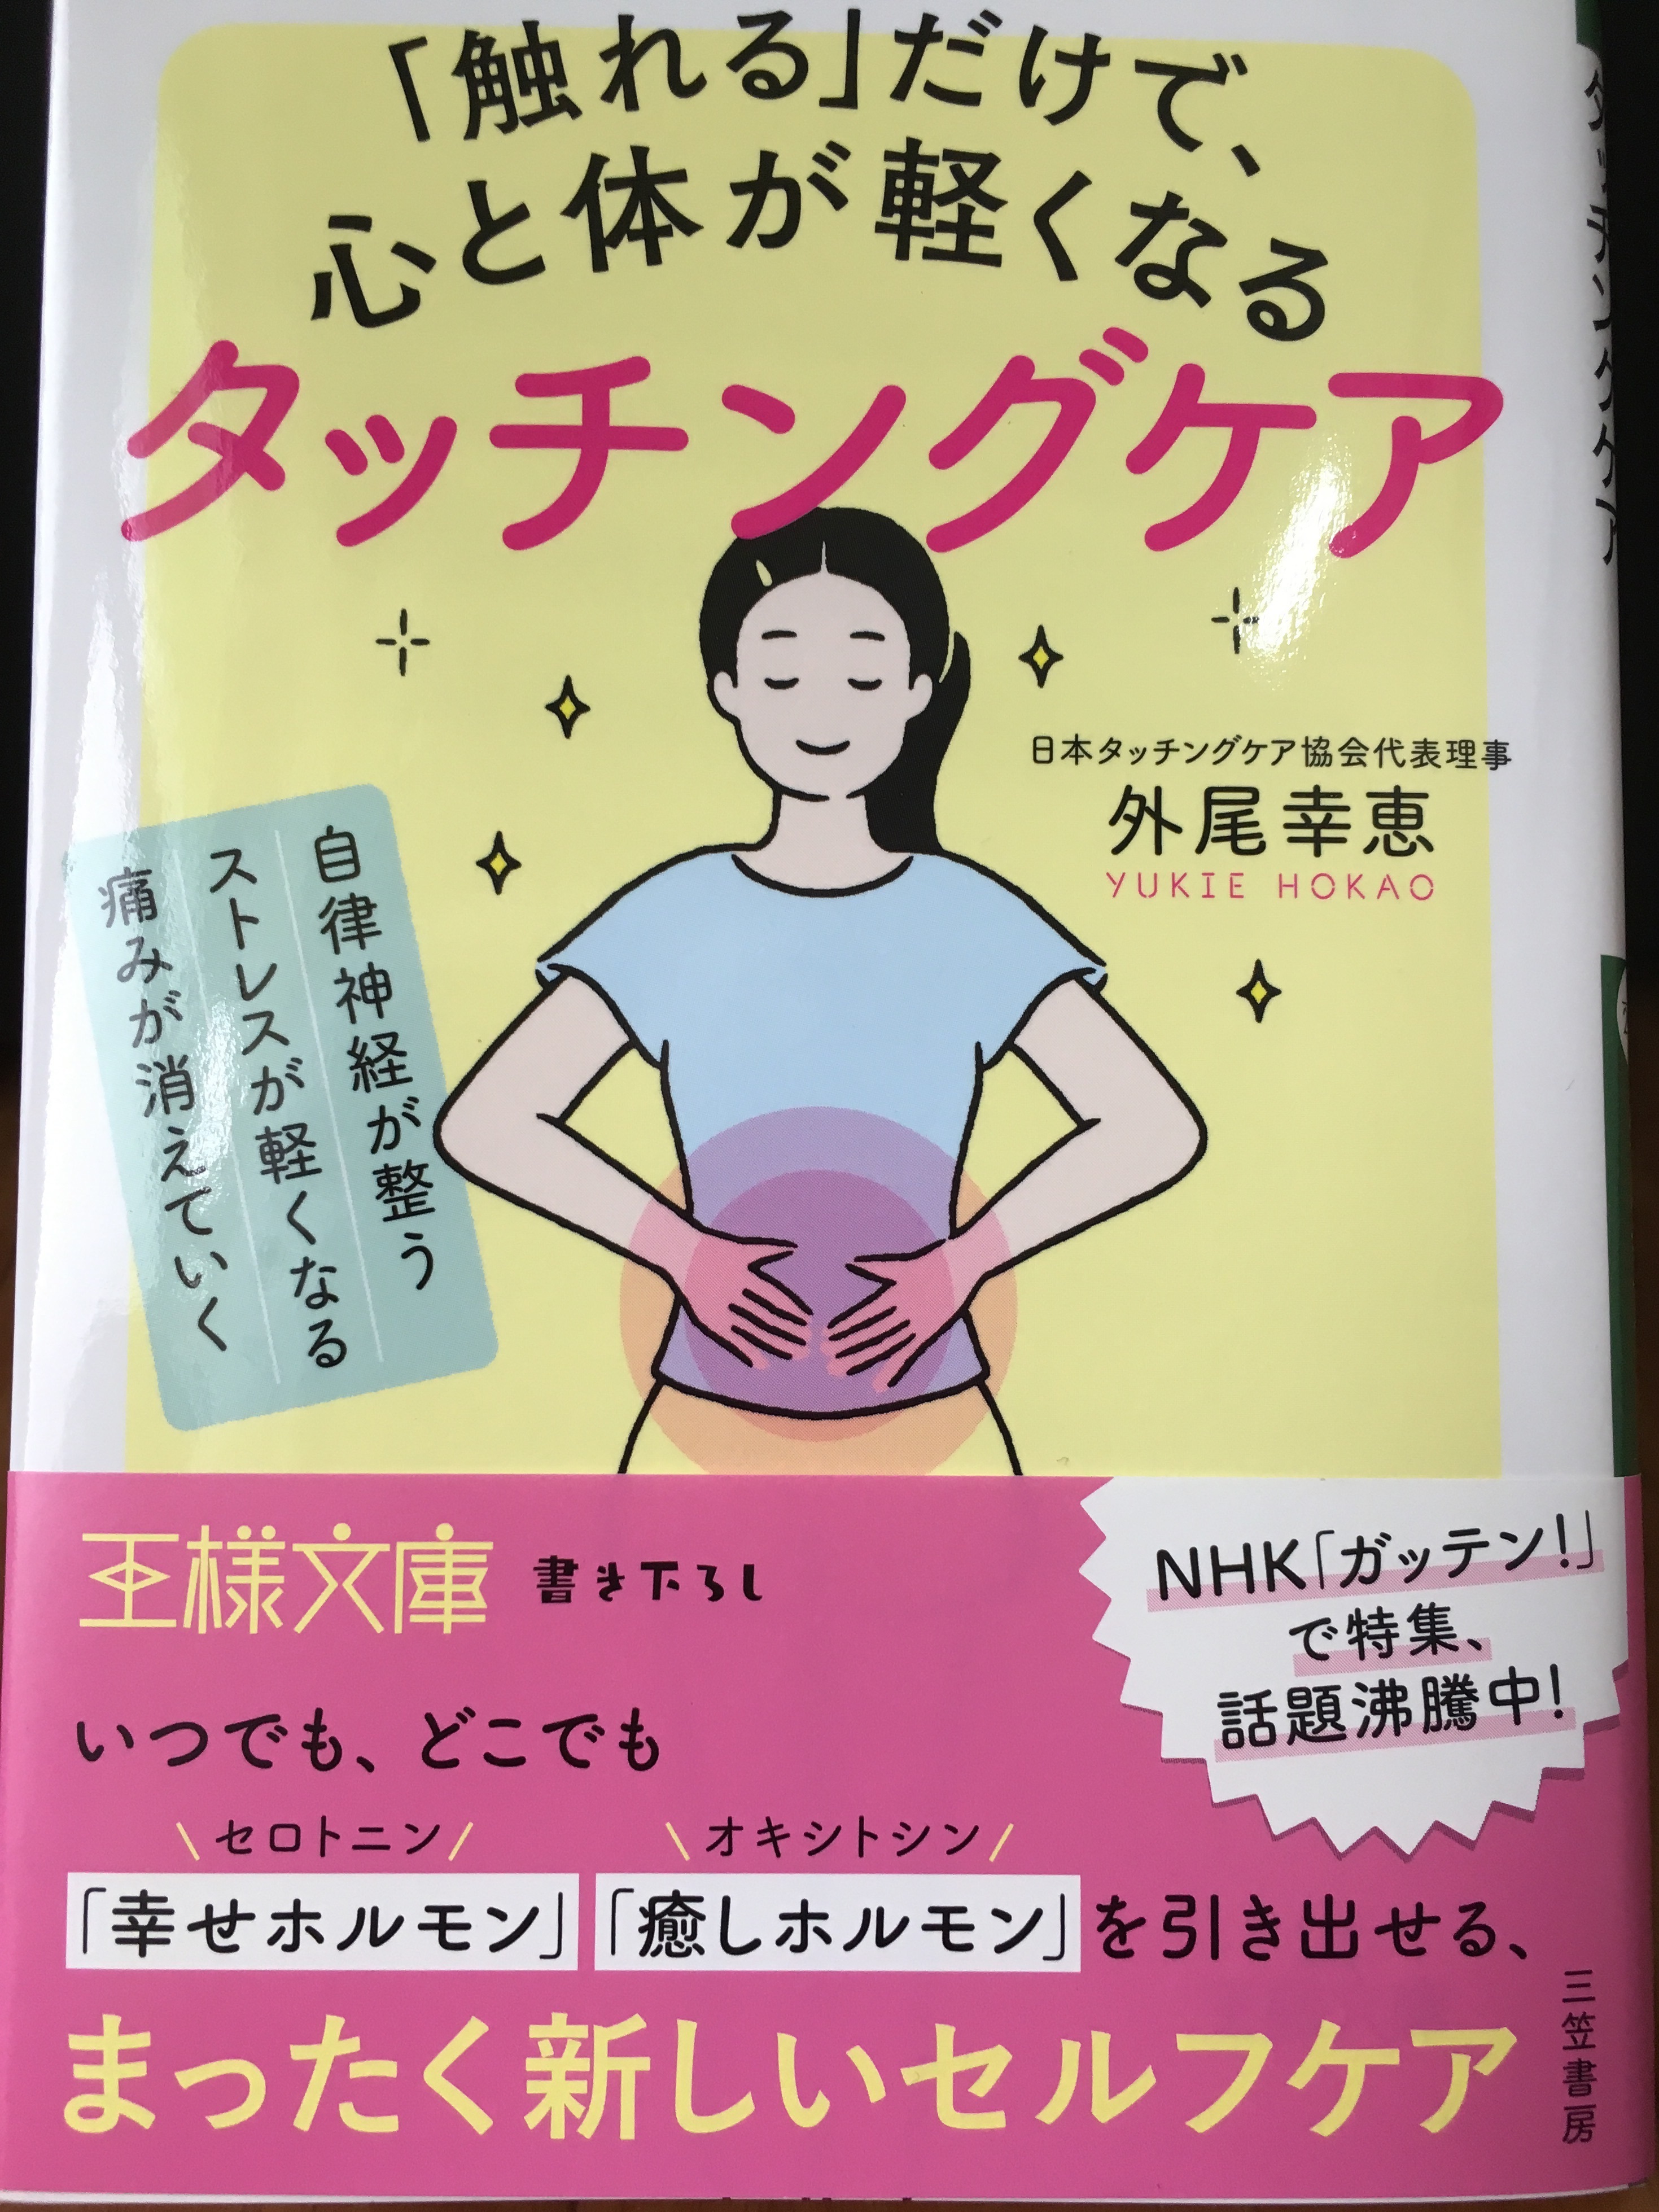 新刊 触れる だけで 心と体が軽くなるタッチングケア 発売 医療資格者の経験 知識をストレスケアに活用 日本タッチングケア協会のプレスリリース